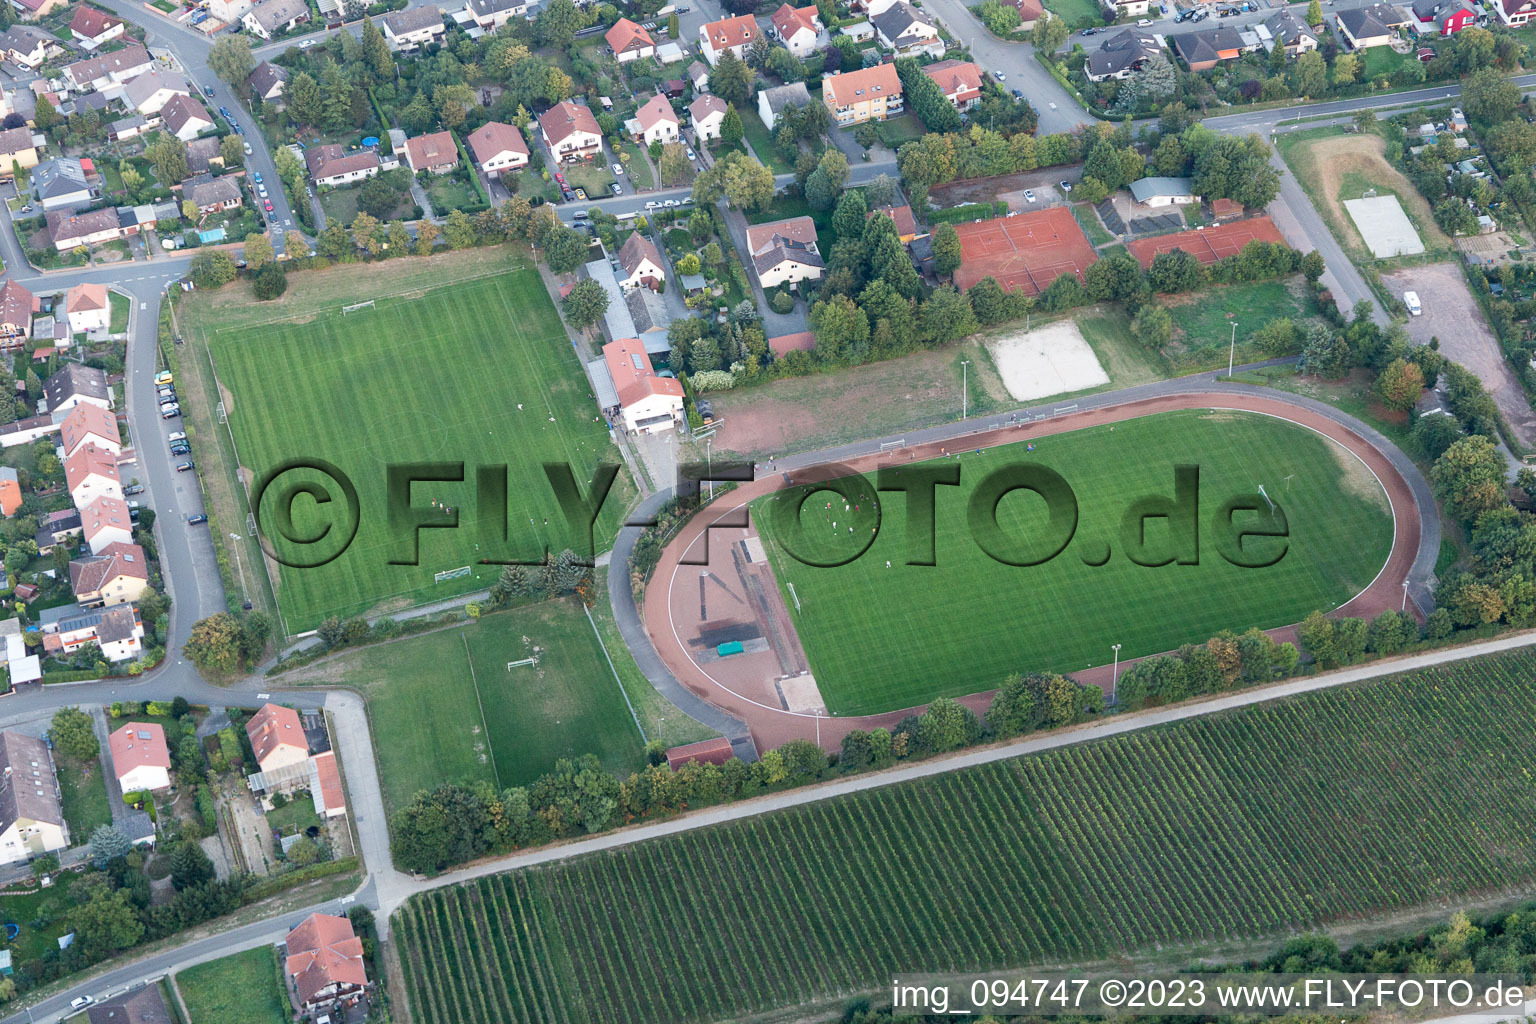 Guntersblum im Bundesland Rheinland-Pfalz, Deutschland aus der Drohnenperspektive